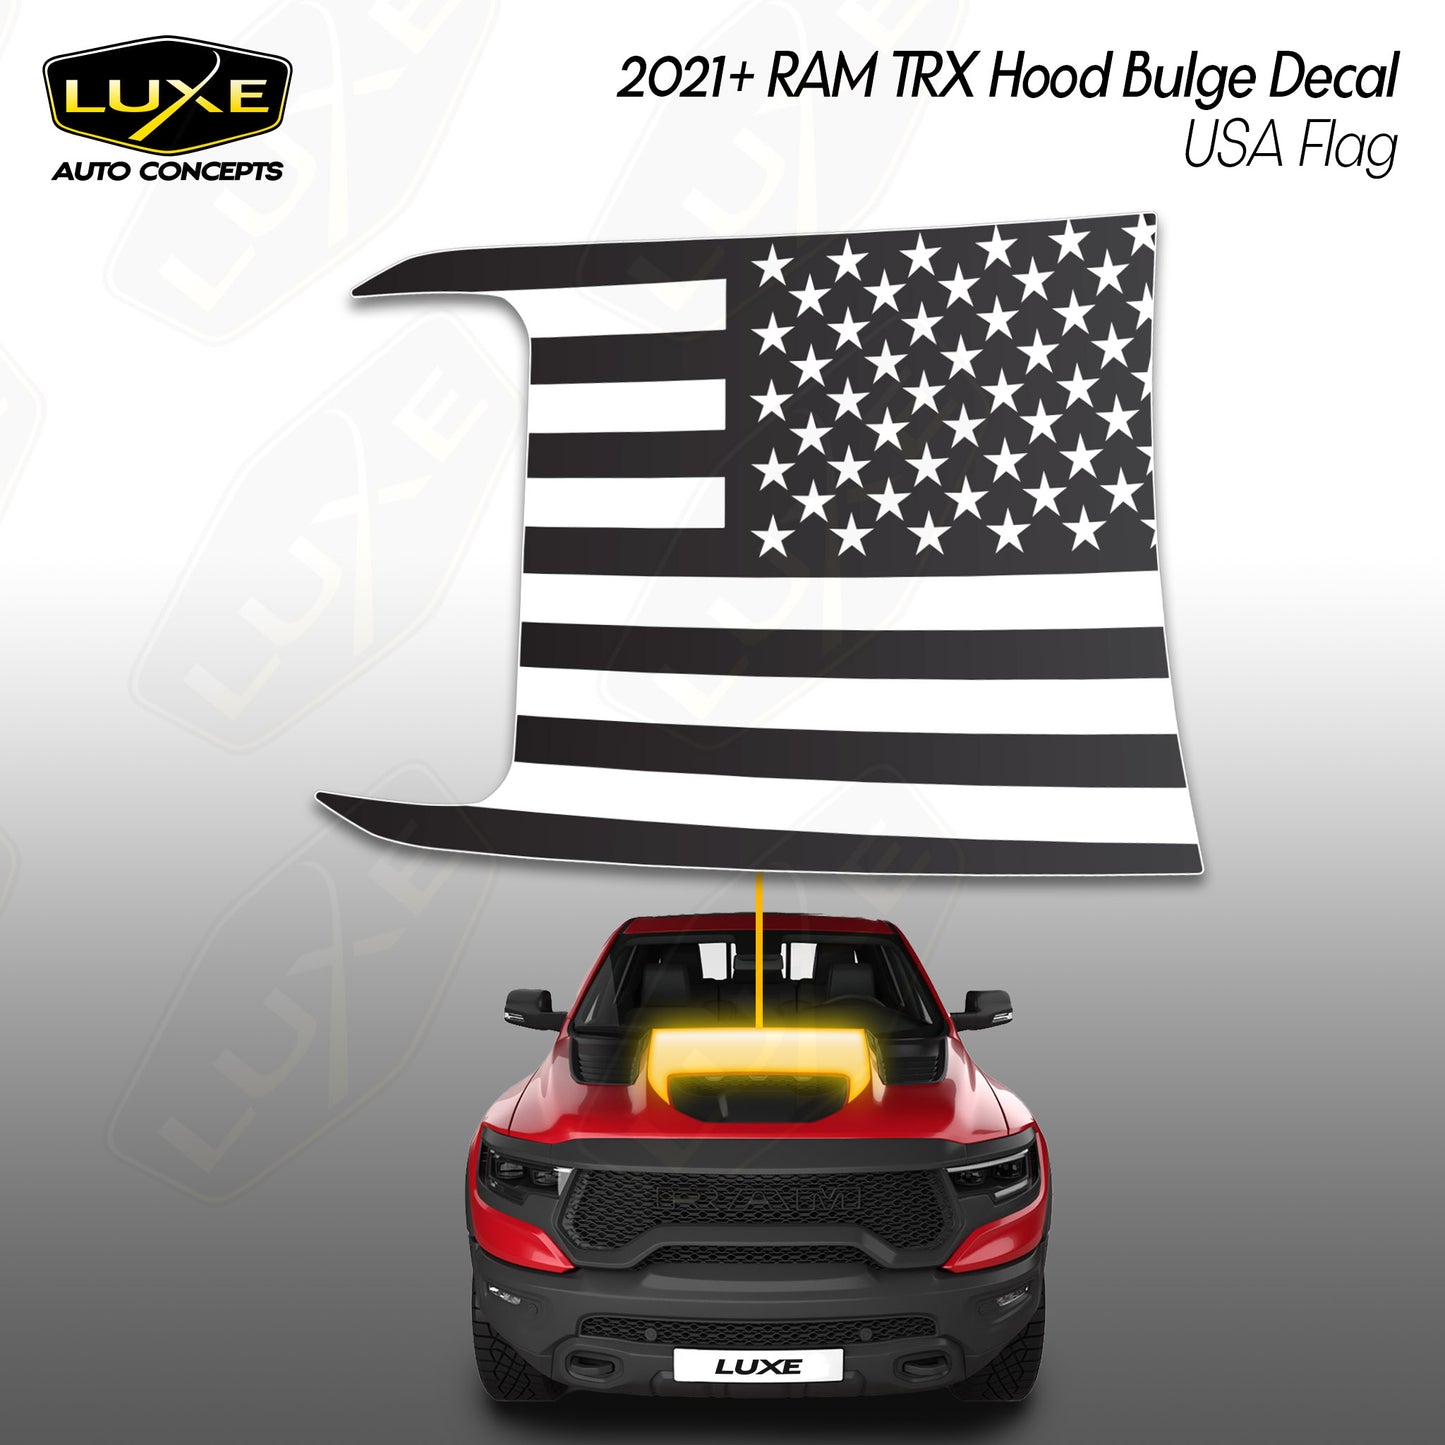 RAM TRX Hood Bulge Decal - USA Flag